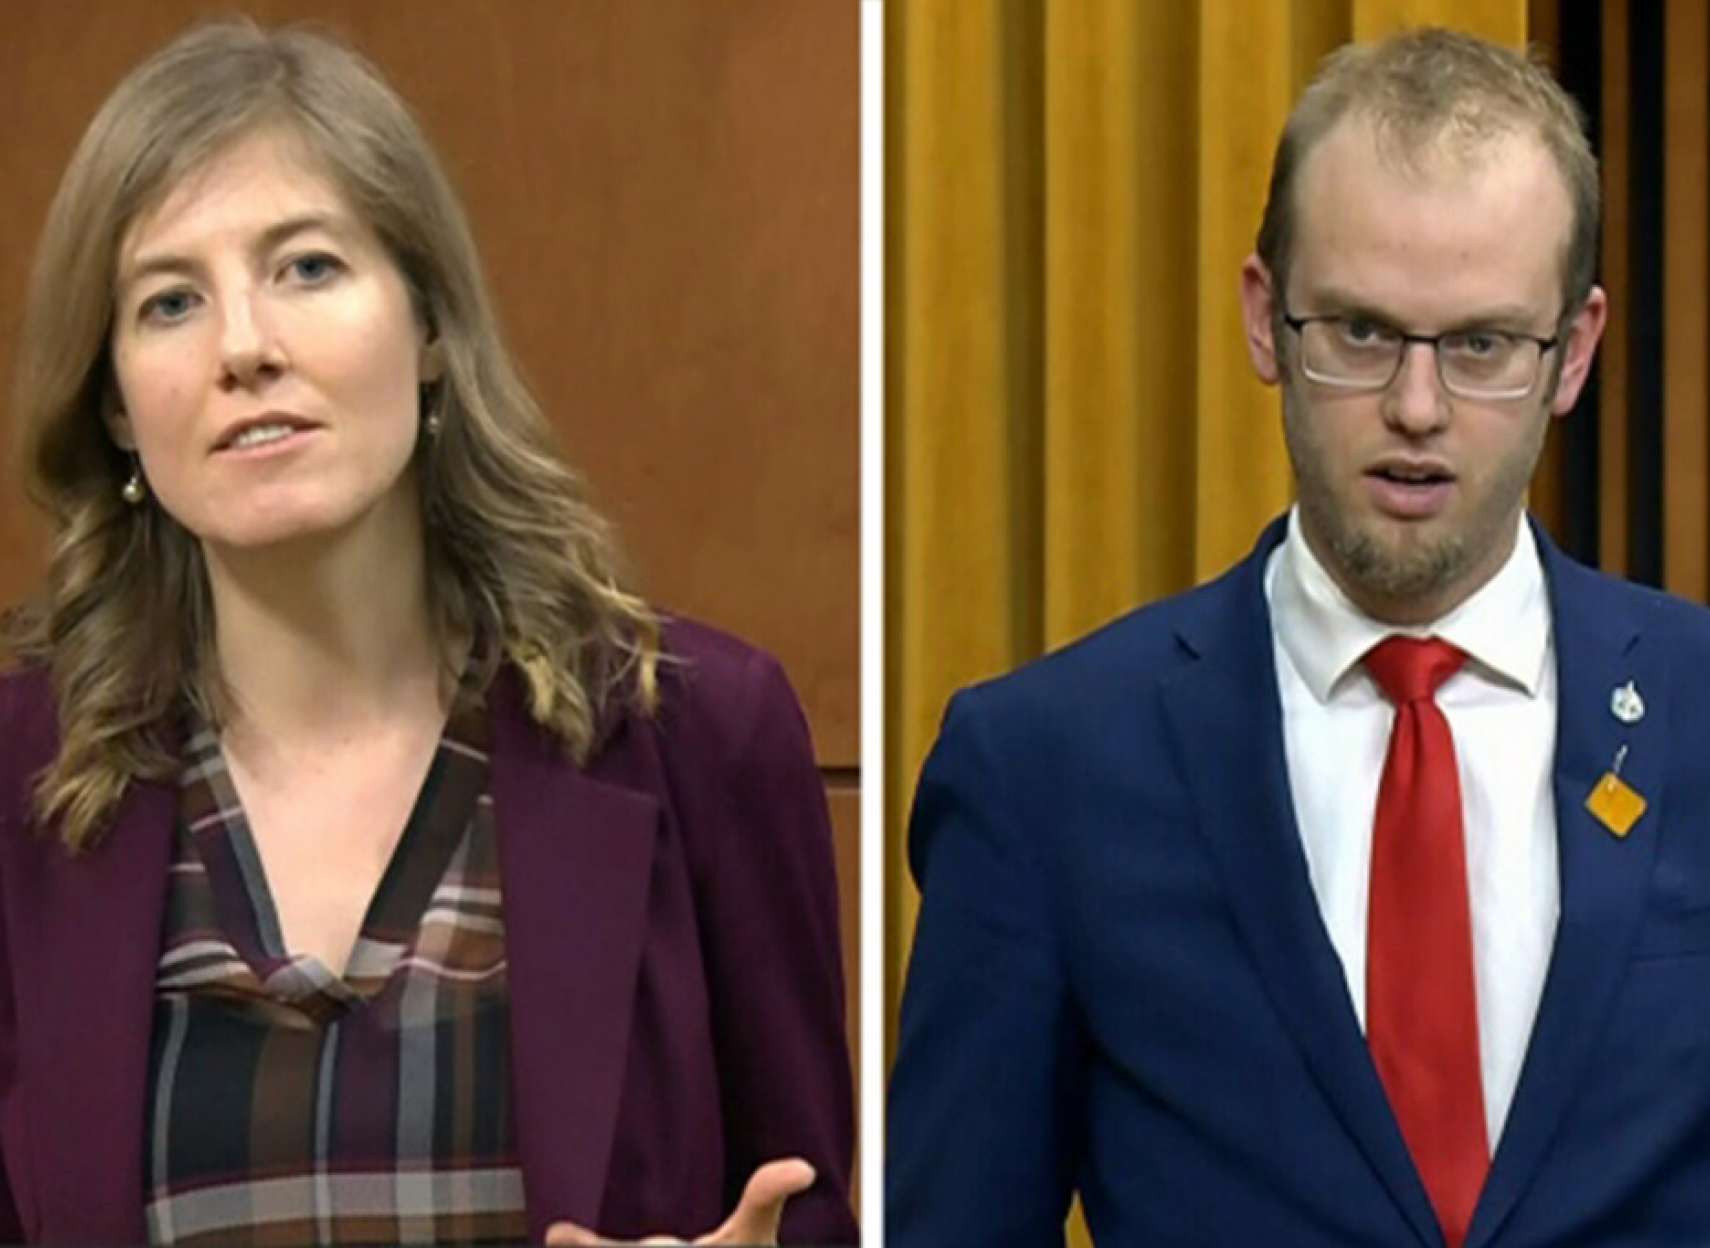 اخبار-کانادا-بحث-و-جدل-درباره-کارگران-جنسی-بین-نمایندگان-مجلس